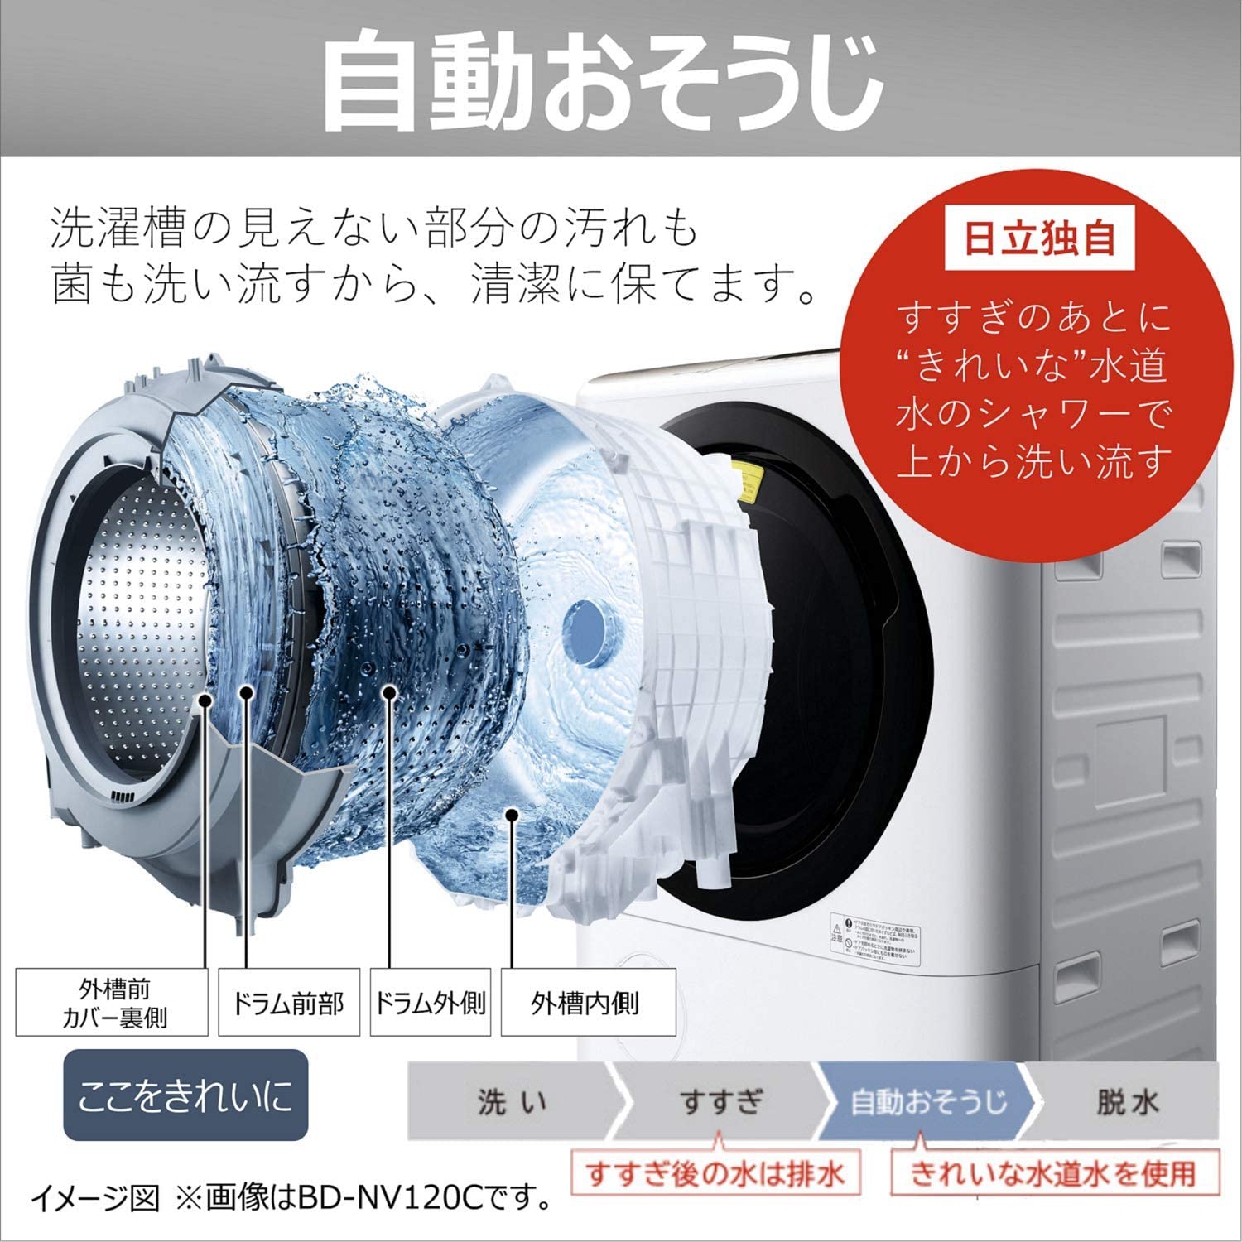 日立(HITACHI) ビッグドラム 洗濯乾燥機 BD-SG100Cの商品画像5 